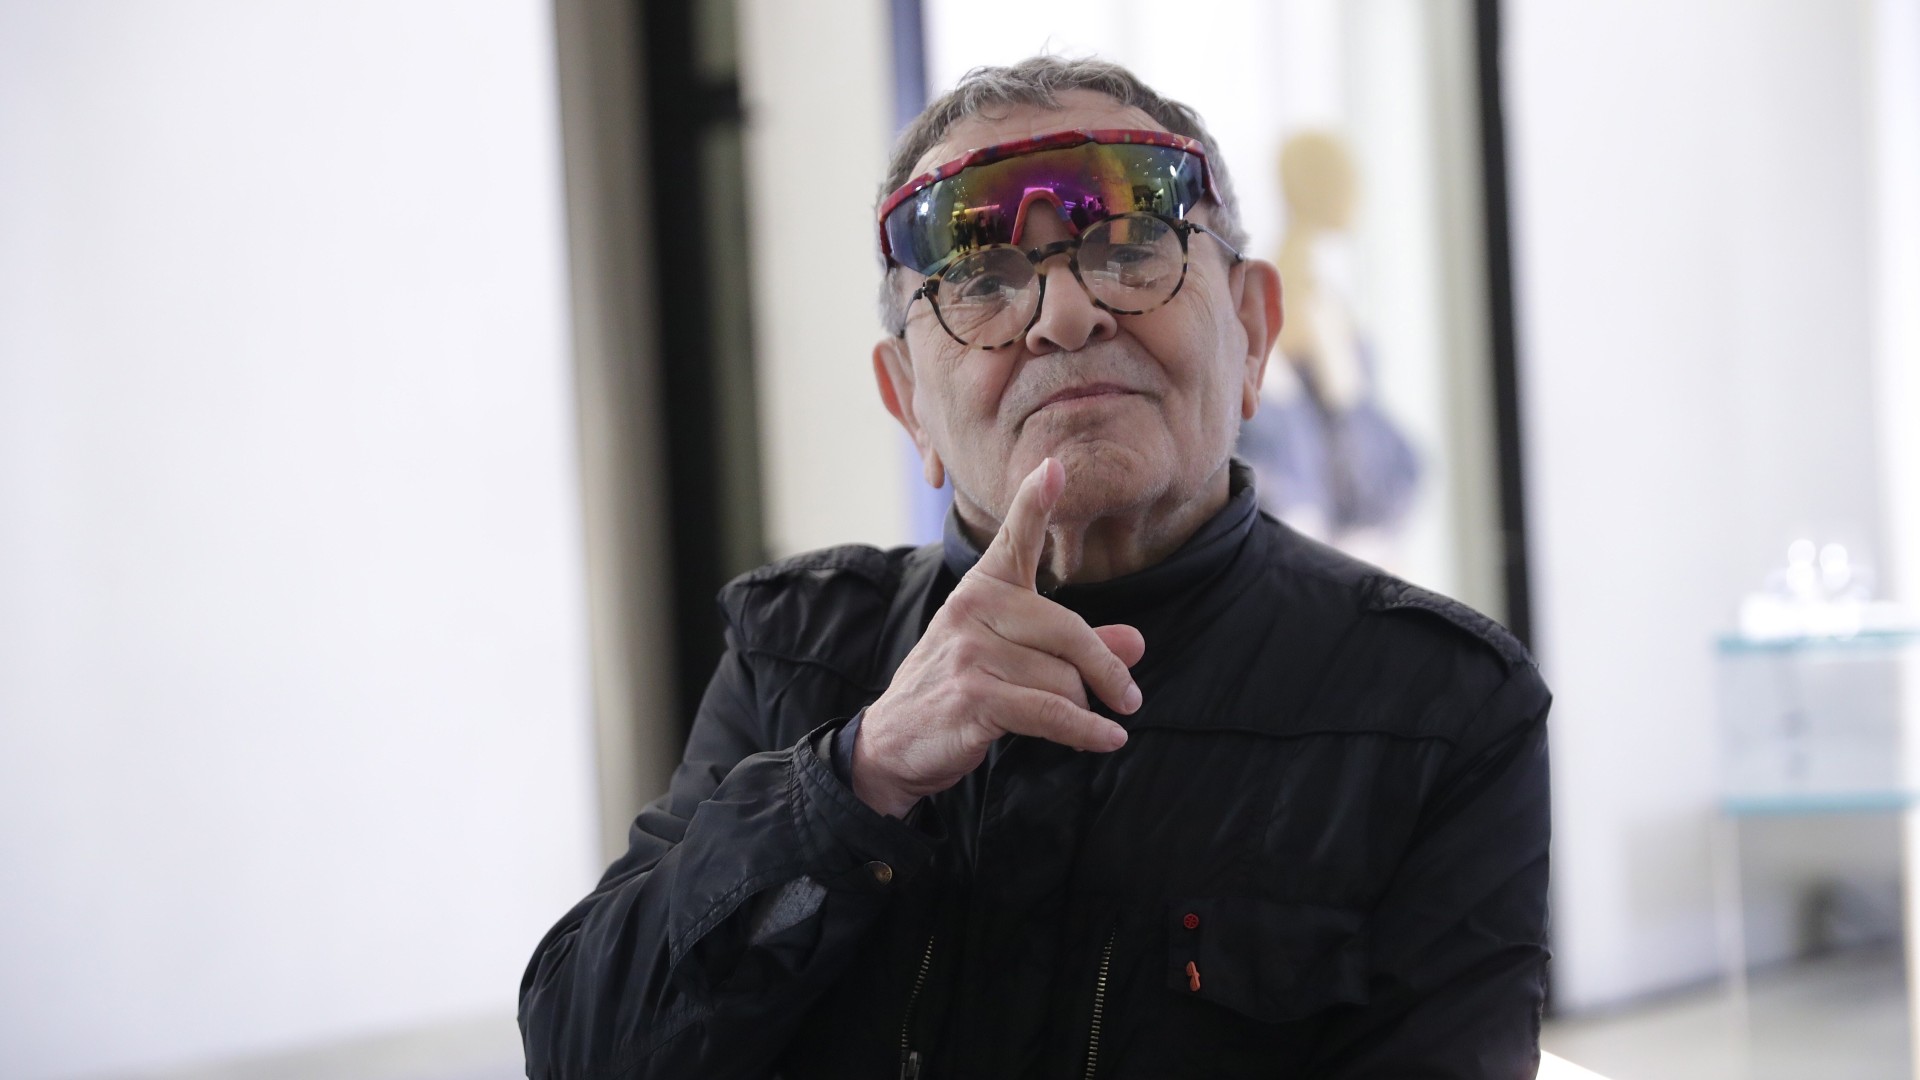 Ir al Video Arrabal vuelve a Cannes para presentar la restauración de "Viva la muerte" a sus 89 años: "Nunca he estado mejor"